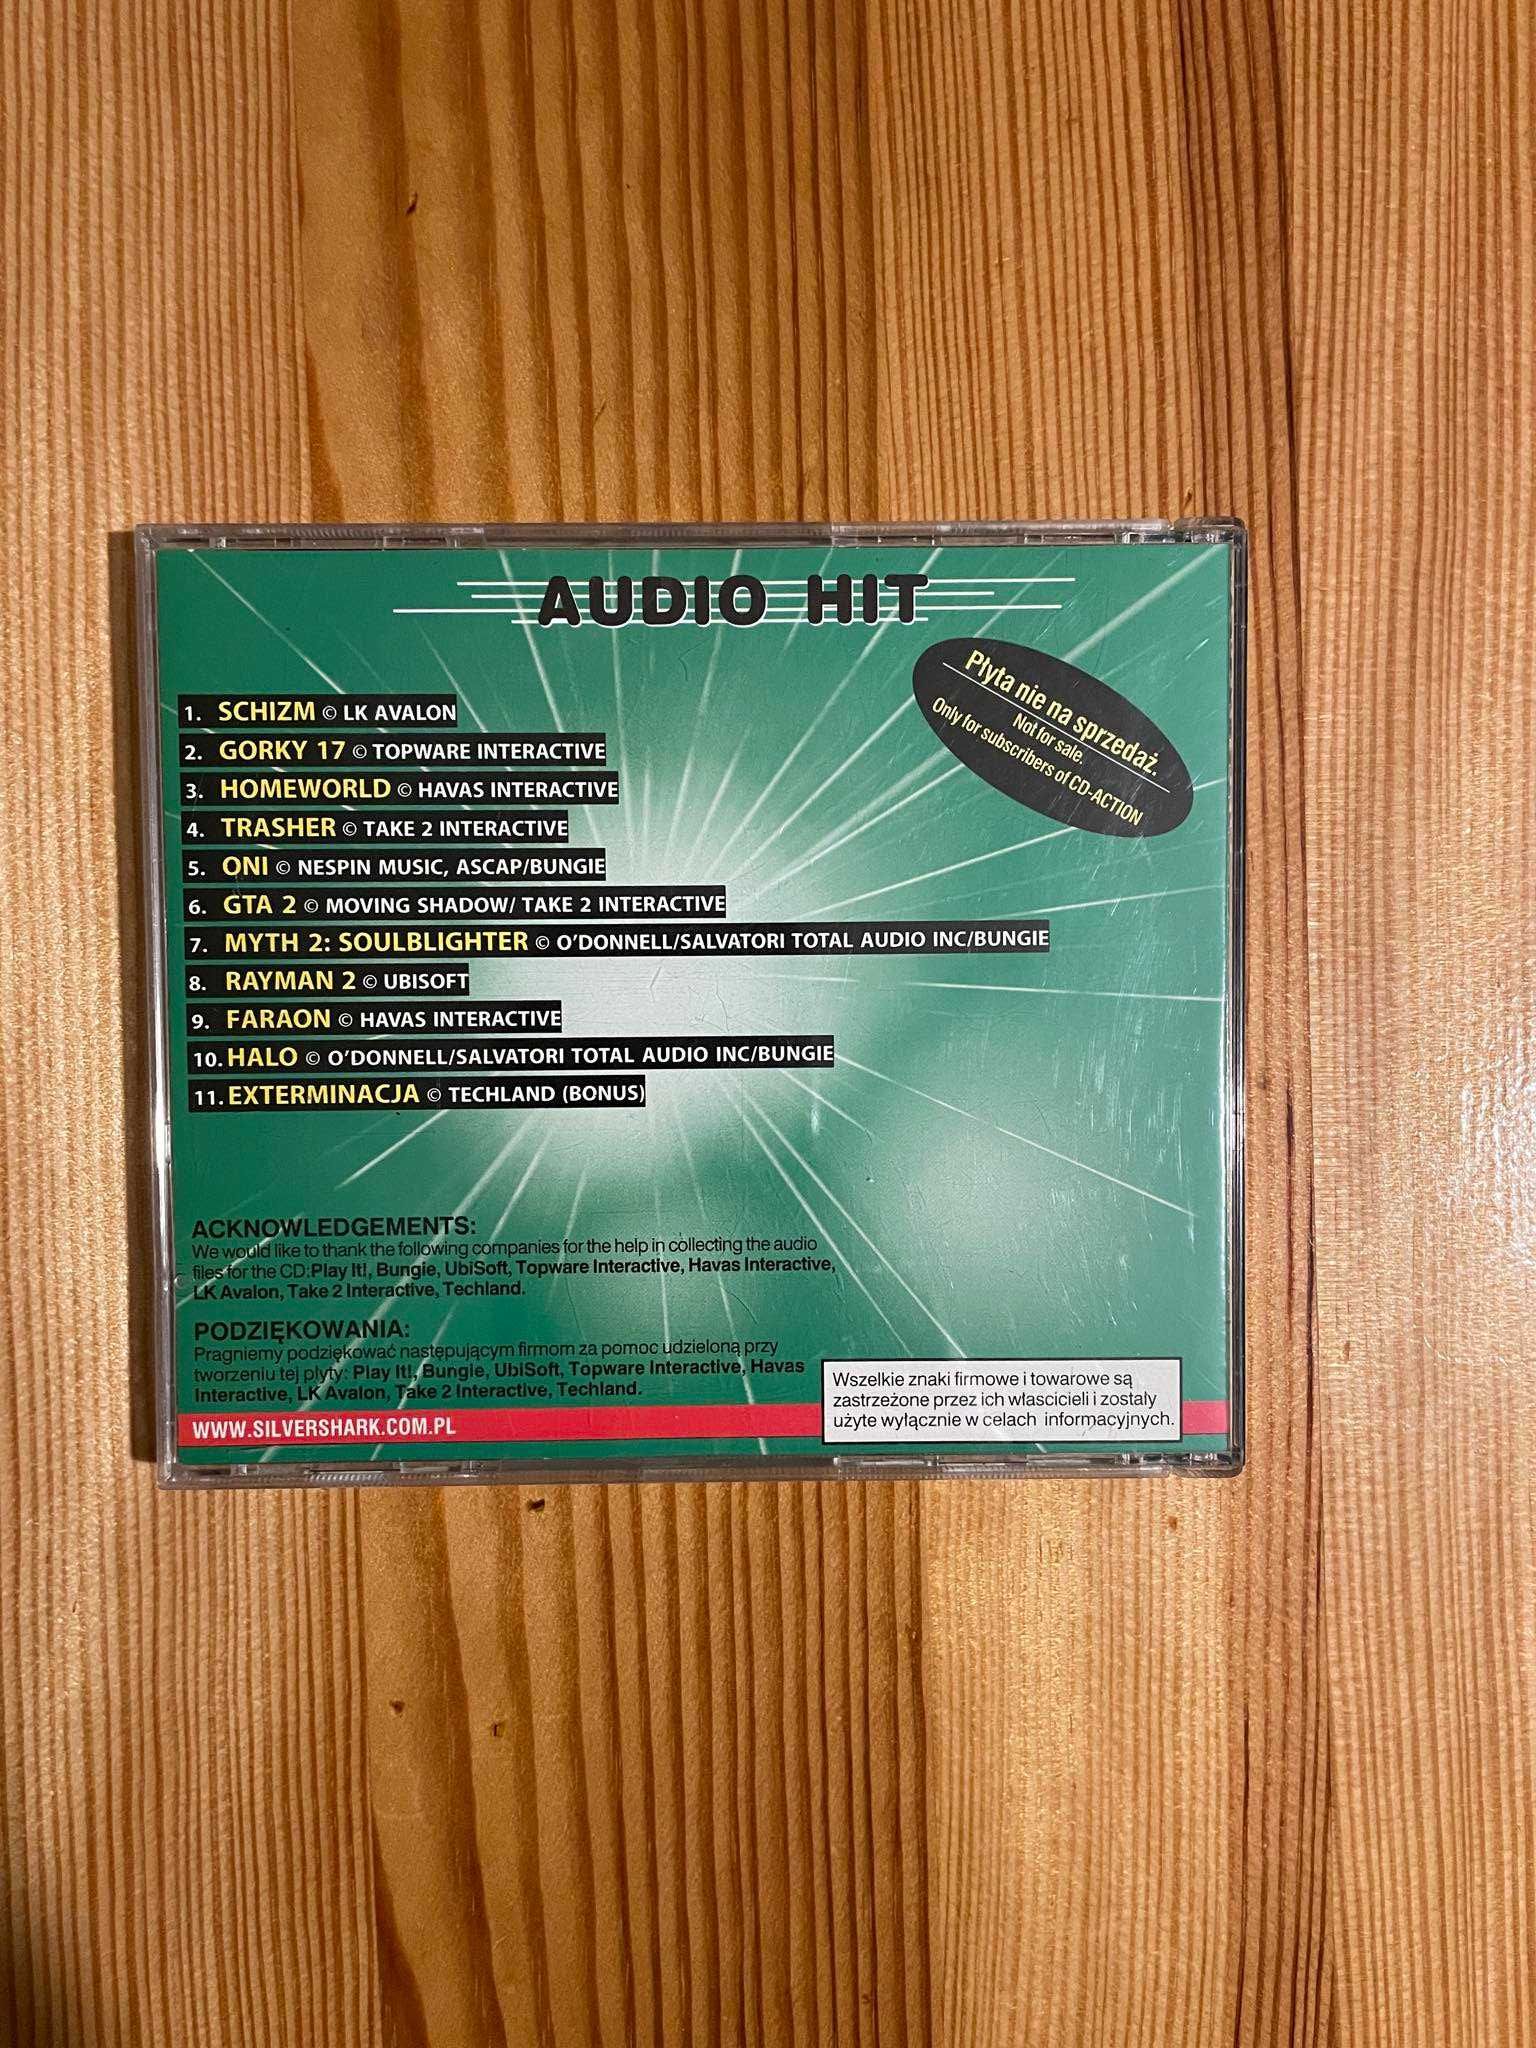 CD Action płyta Audio prawdziwy Biały Kruk